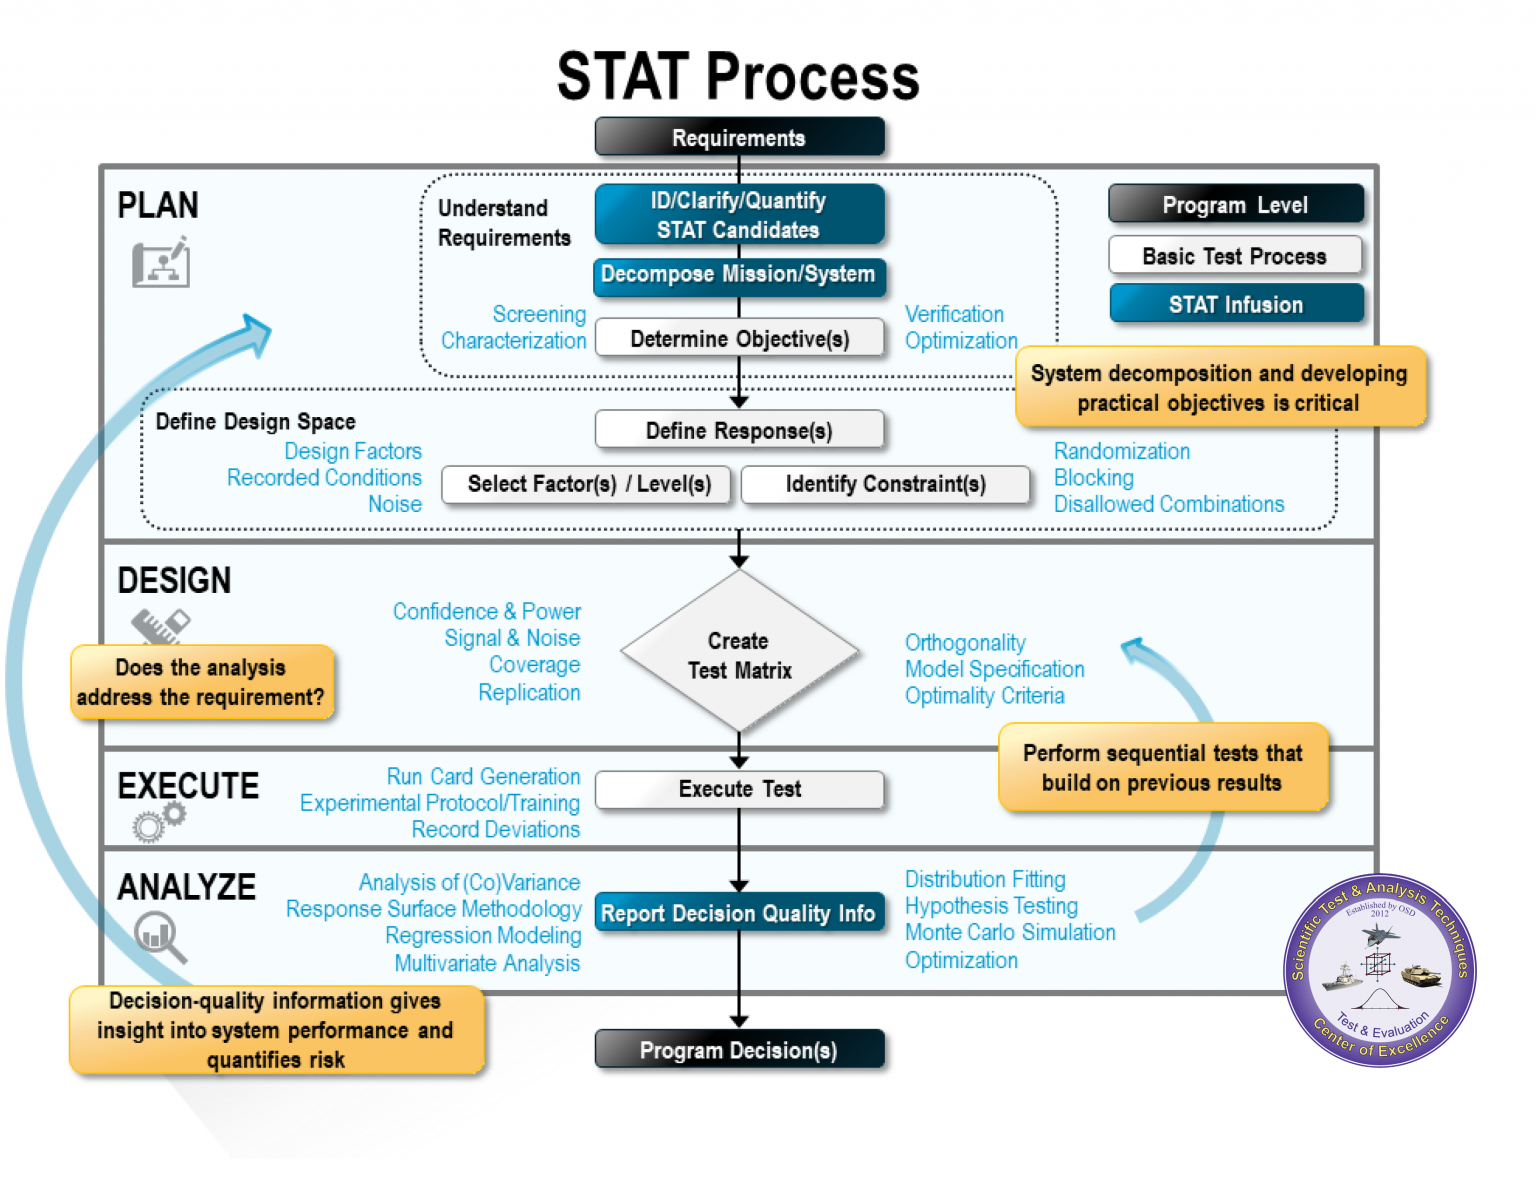 STAT-COE-STAT-Process-1536x1191